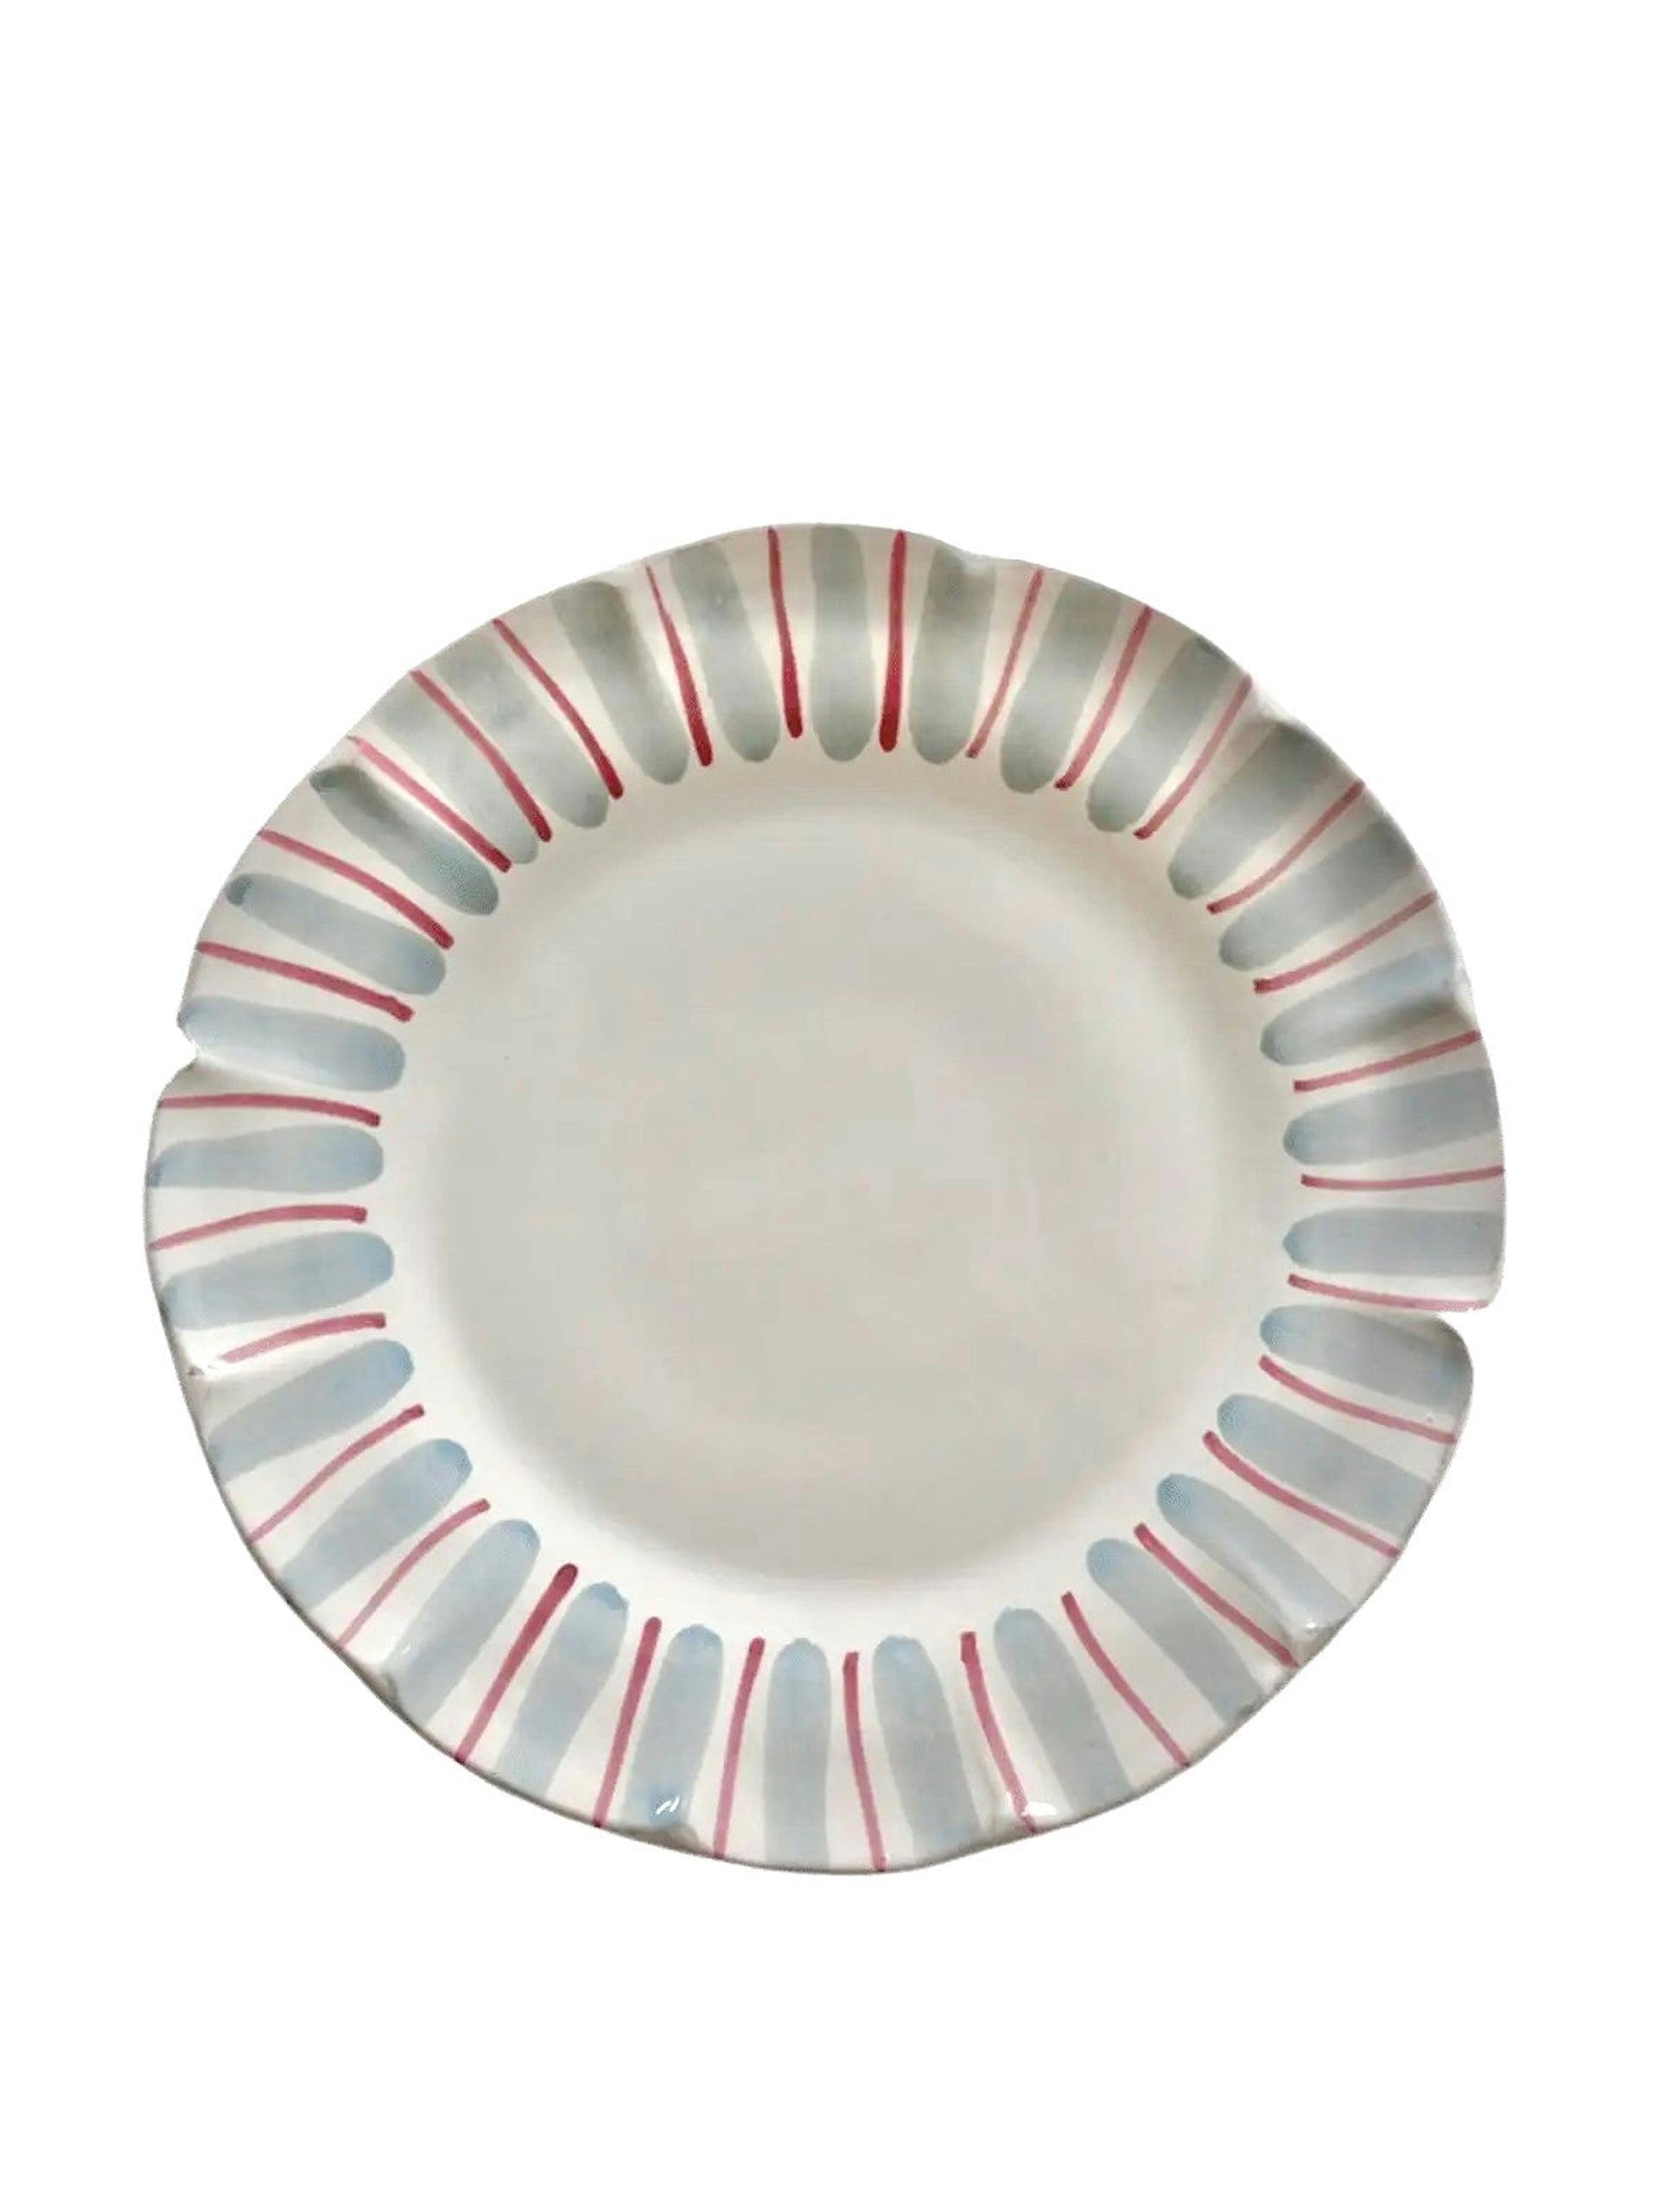 Handmade Italian ceramic dinner plate